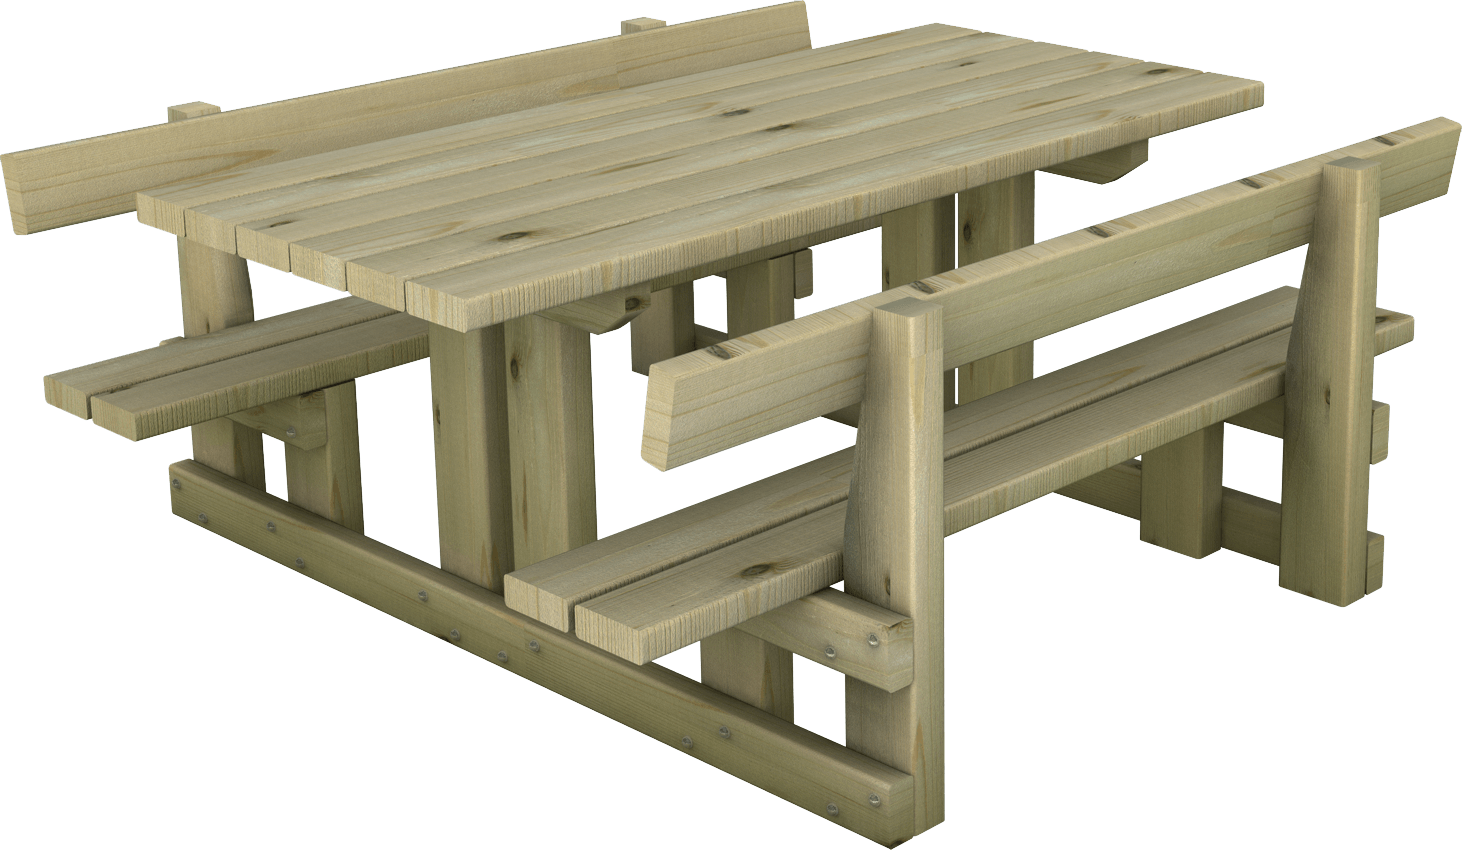 Tavolo per bambini in legno di pino nordico impregnato in autoclave realizzato da Linea Montanalegno - ILT